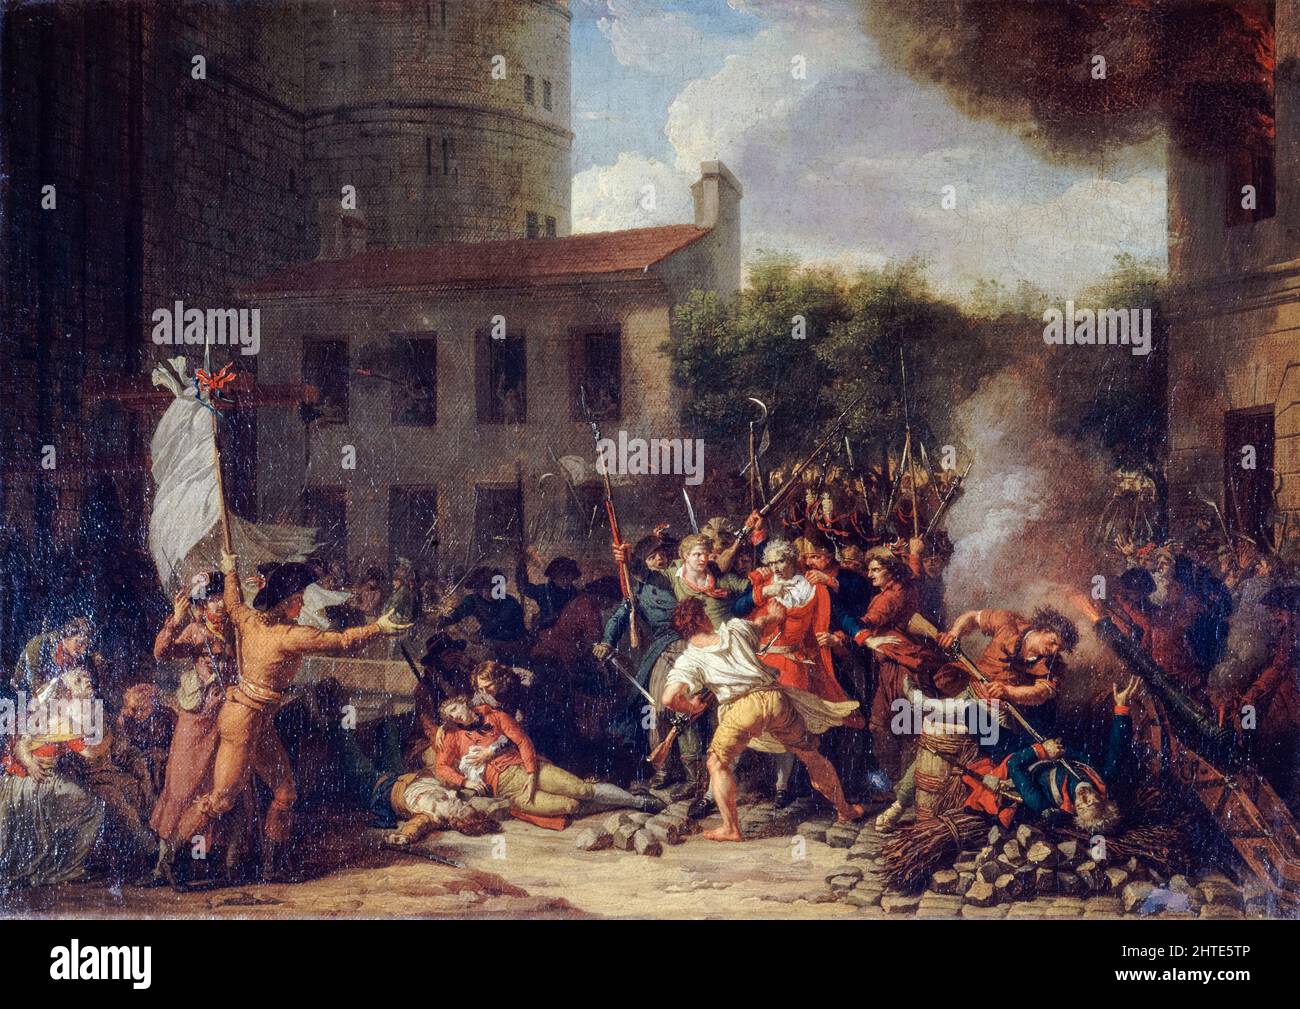 Le contumissement de la Bastille, juillet 14th 1789, l'arrestation du marquis de Launay, peinture à l'huile sur toile de Charles Thévenin, 1793 Banque D'Images